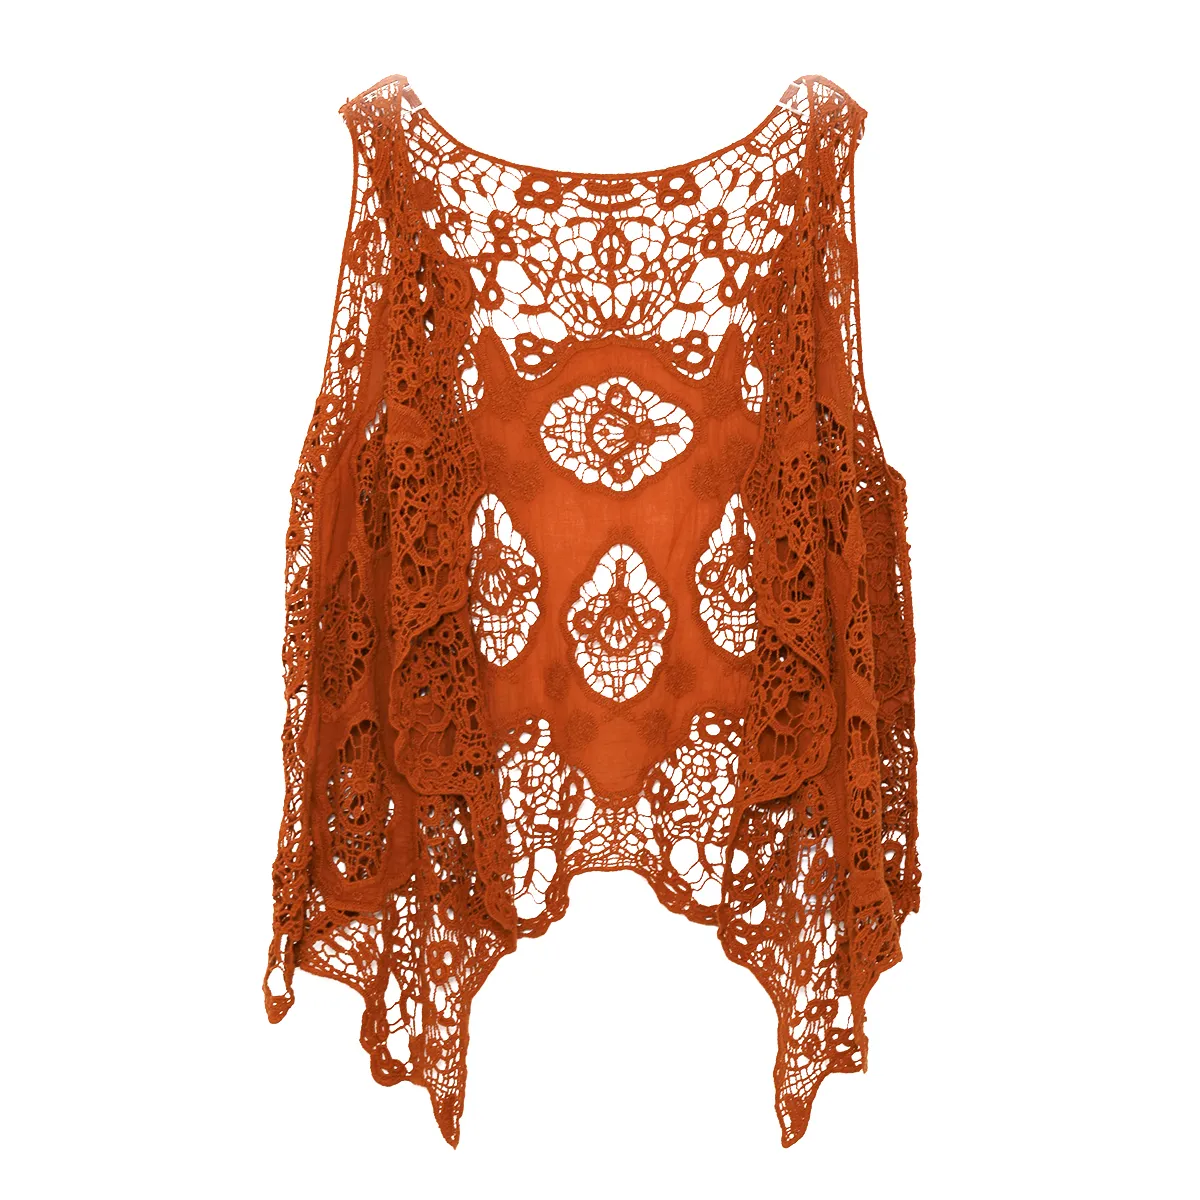 Jastie Hippie Froral Patch Design Vest Retro Vintage Crochet Summer Beach Cover Up Top Asymétrique Open Stitch Kimono Cardigain 201031